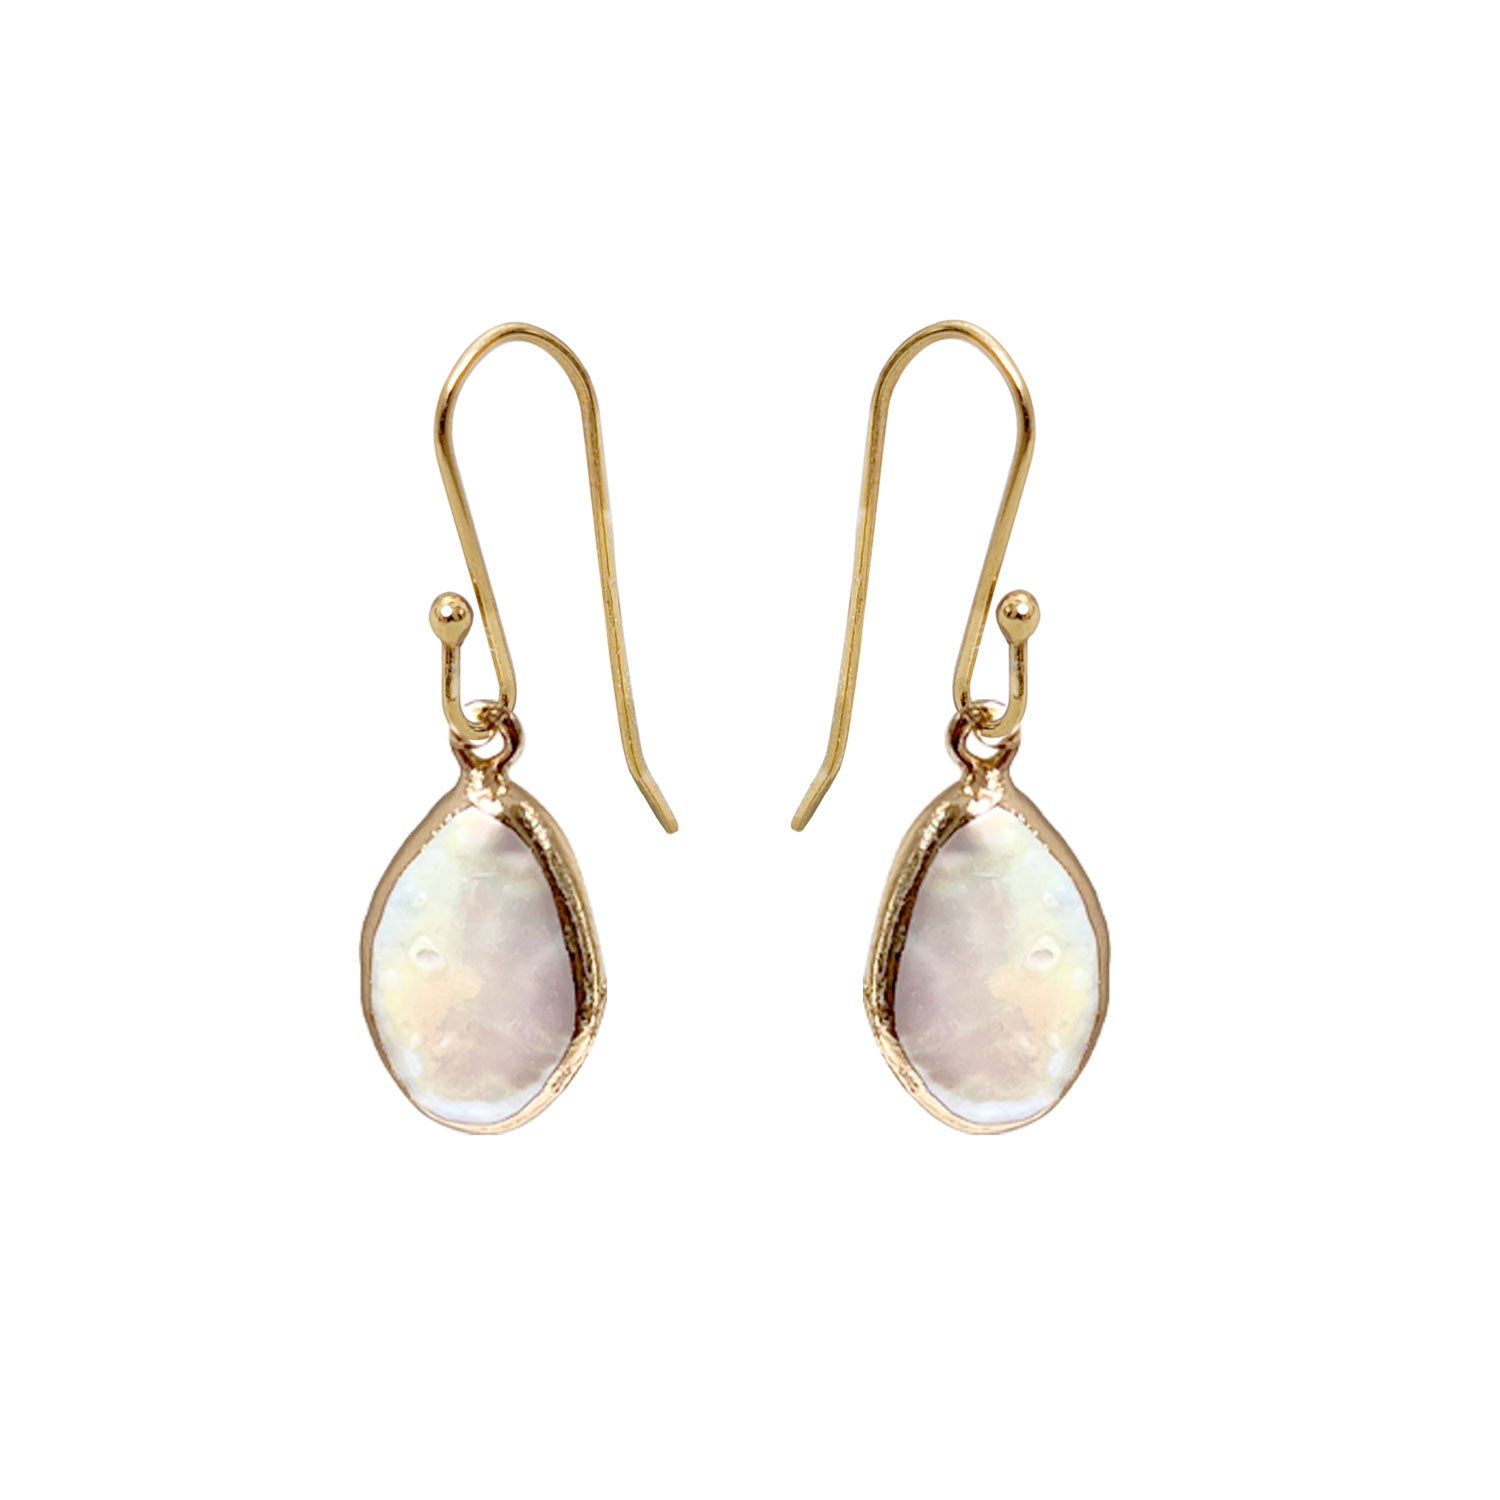 Freeform bezel set baroque freshwater pearl earrings on ear hooks